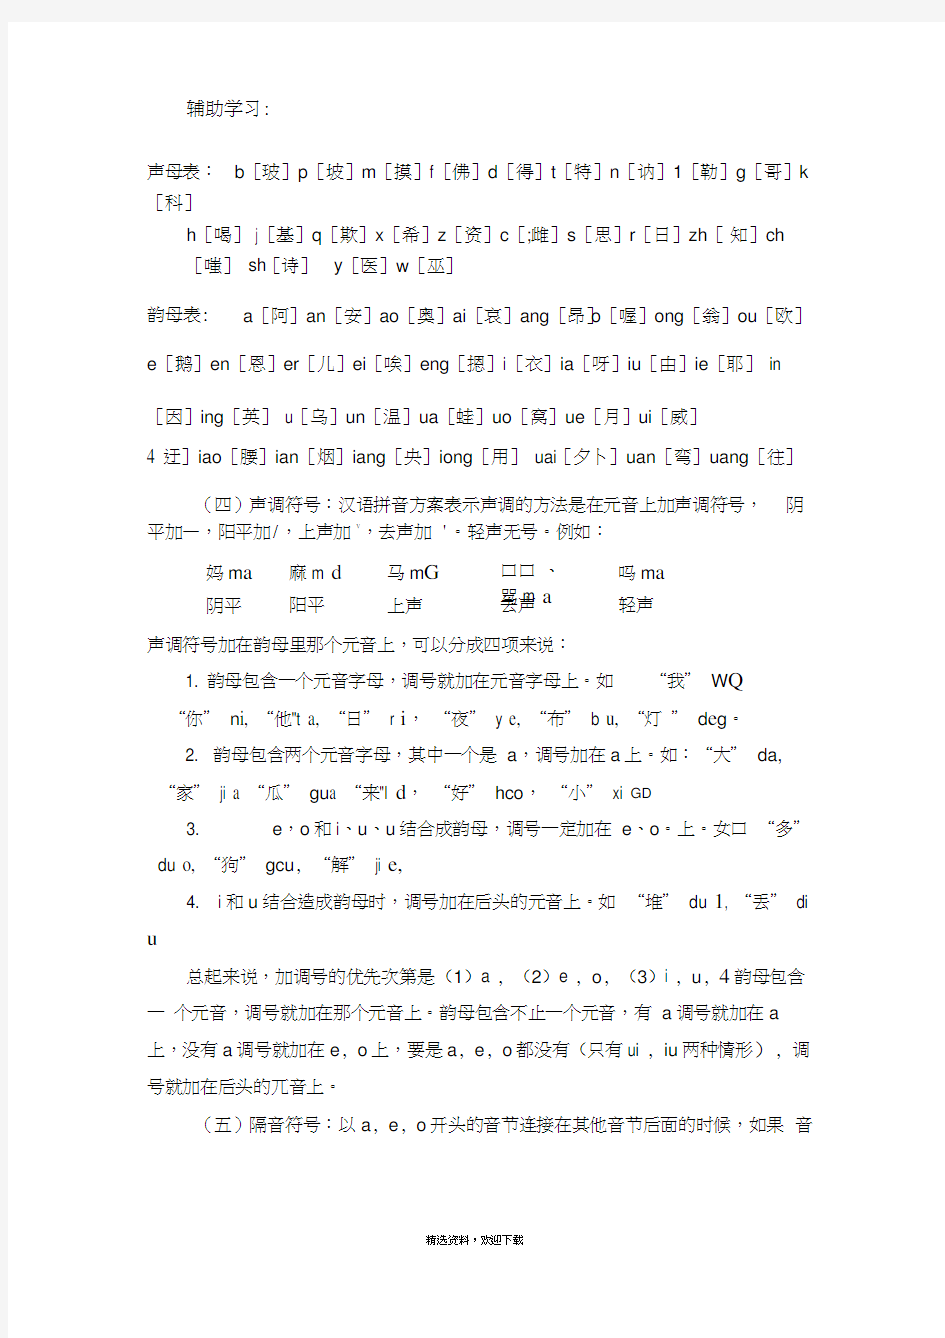 汉语拼音方案23738